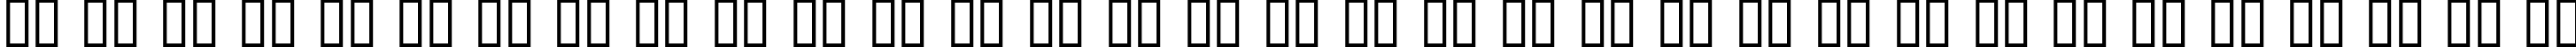 Пример написания русского алфавита шрифтом Decaying